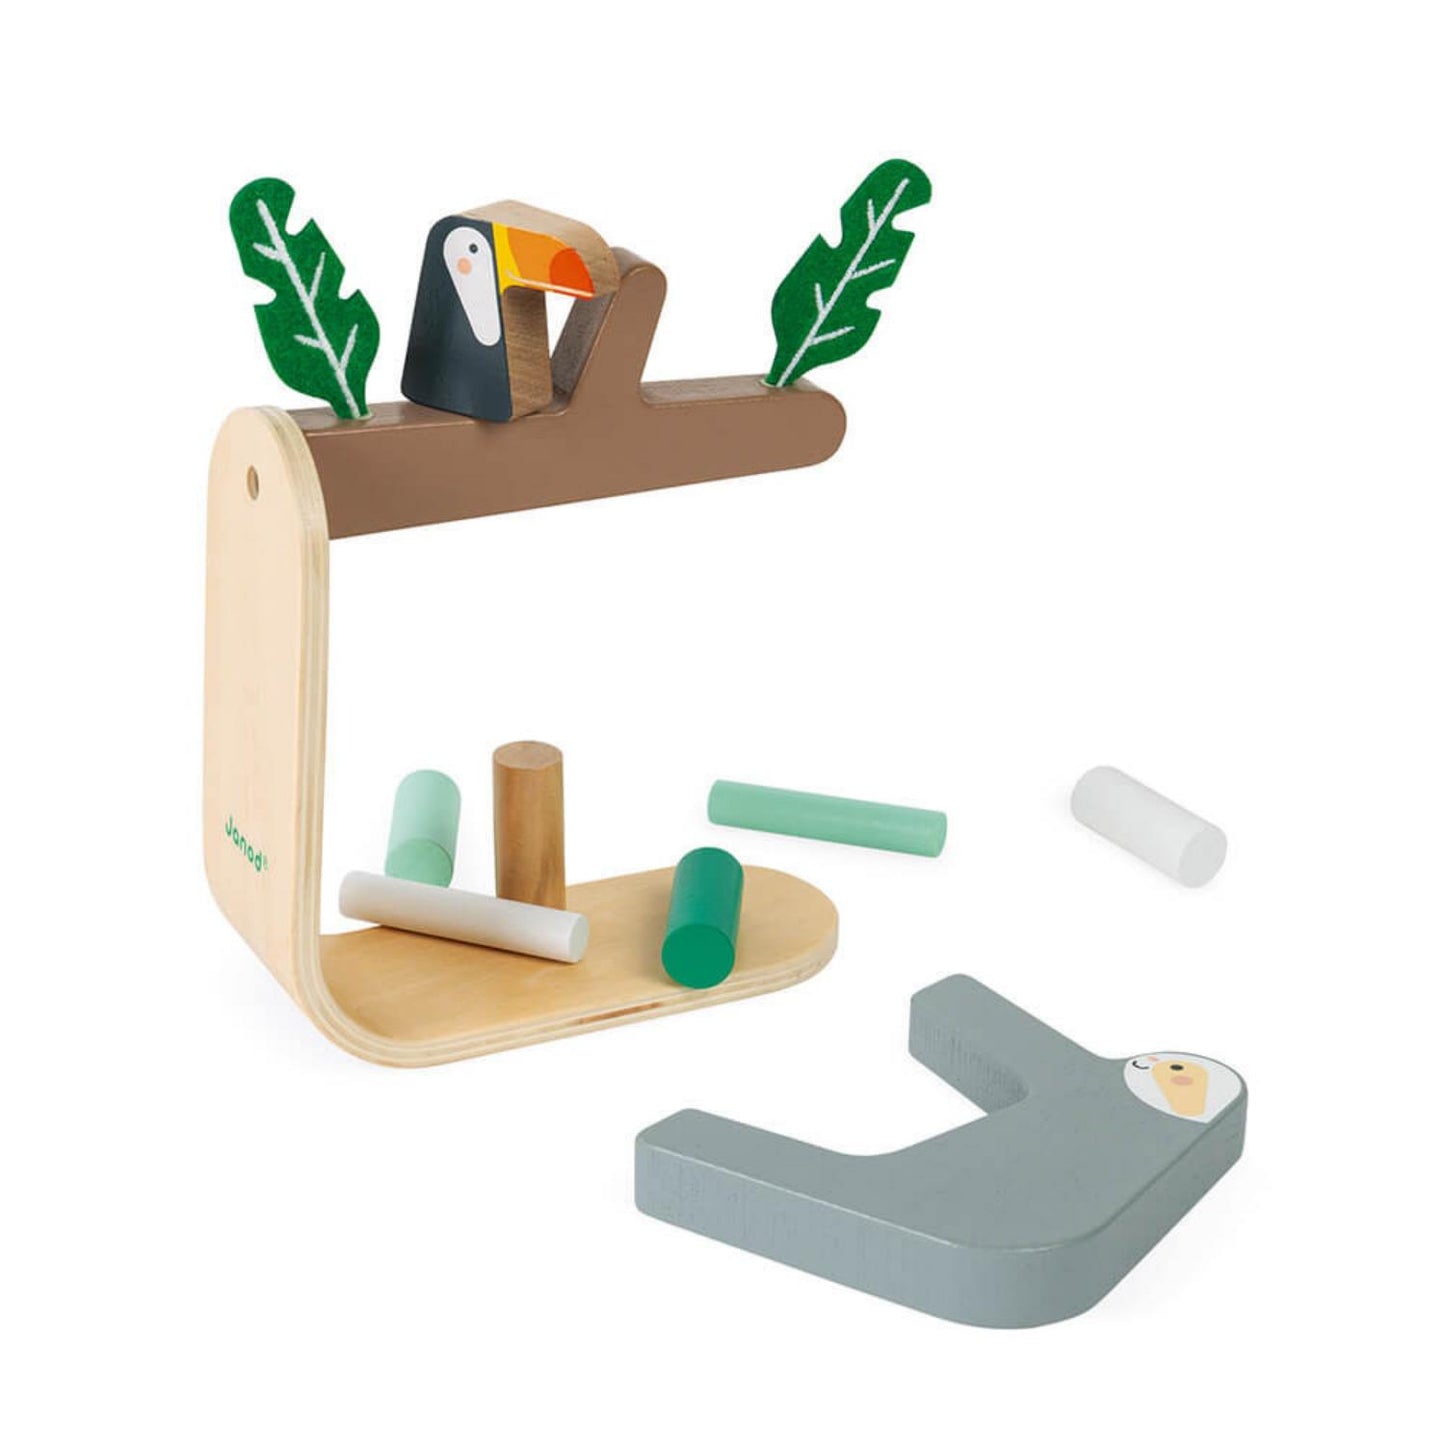 Sloth Balancing Game | Stacking + Balancing Wooden Toy